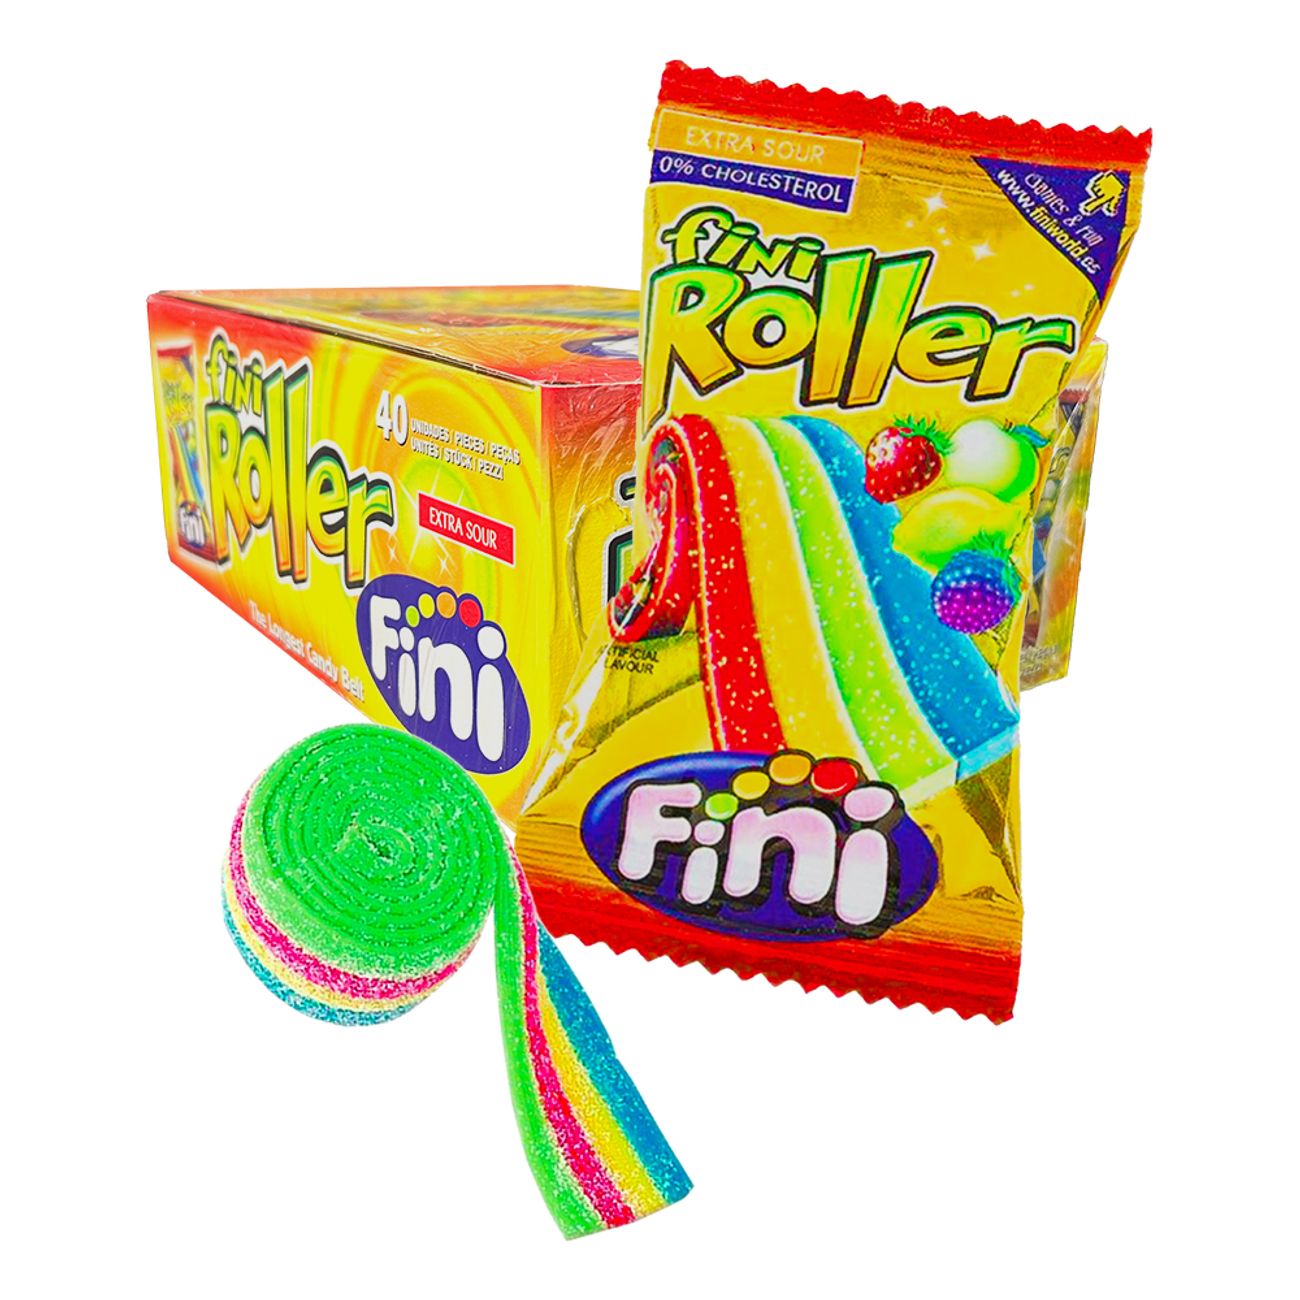 fini-roller-frukt-storpack-95161-2